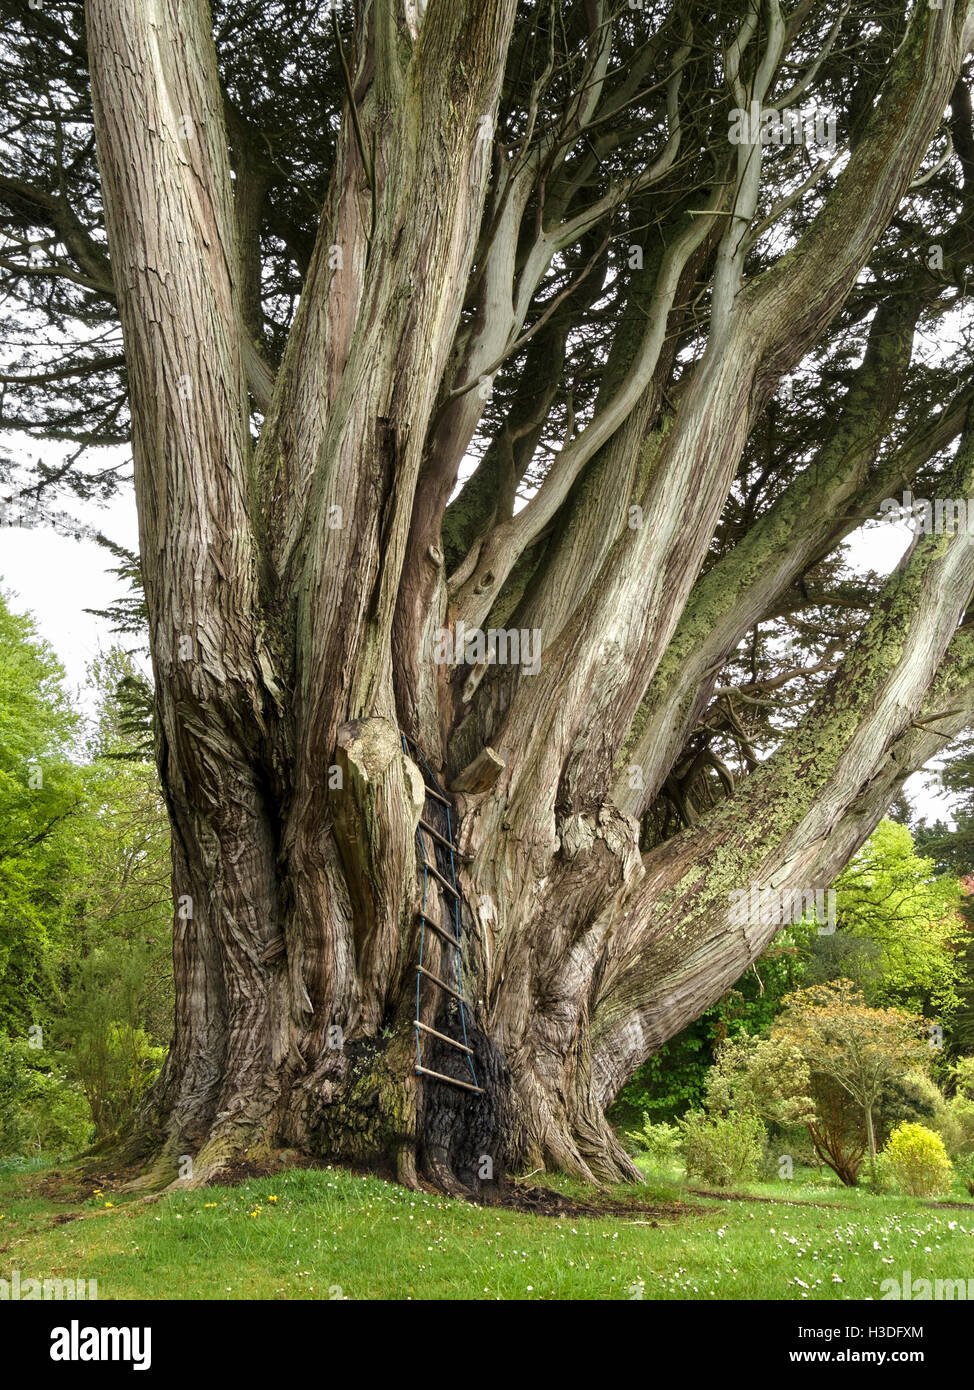 Monterey-Zypresse, berichtet, um größten Umfang im Vereinigten Königreich, Colonsay House Gardens, Insel Colonsay, Schottland, UK. Stockfoto